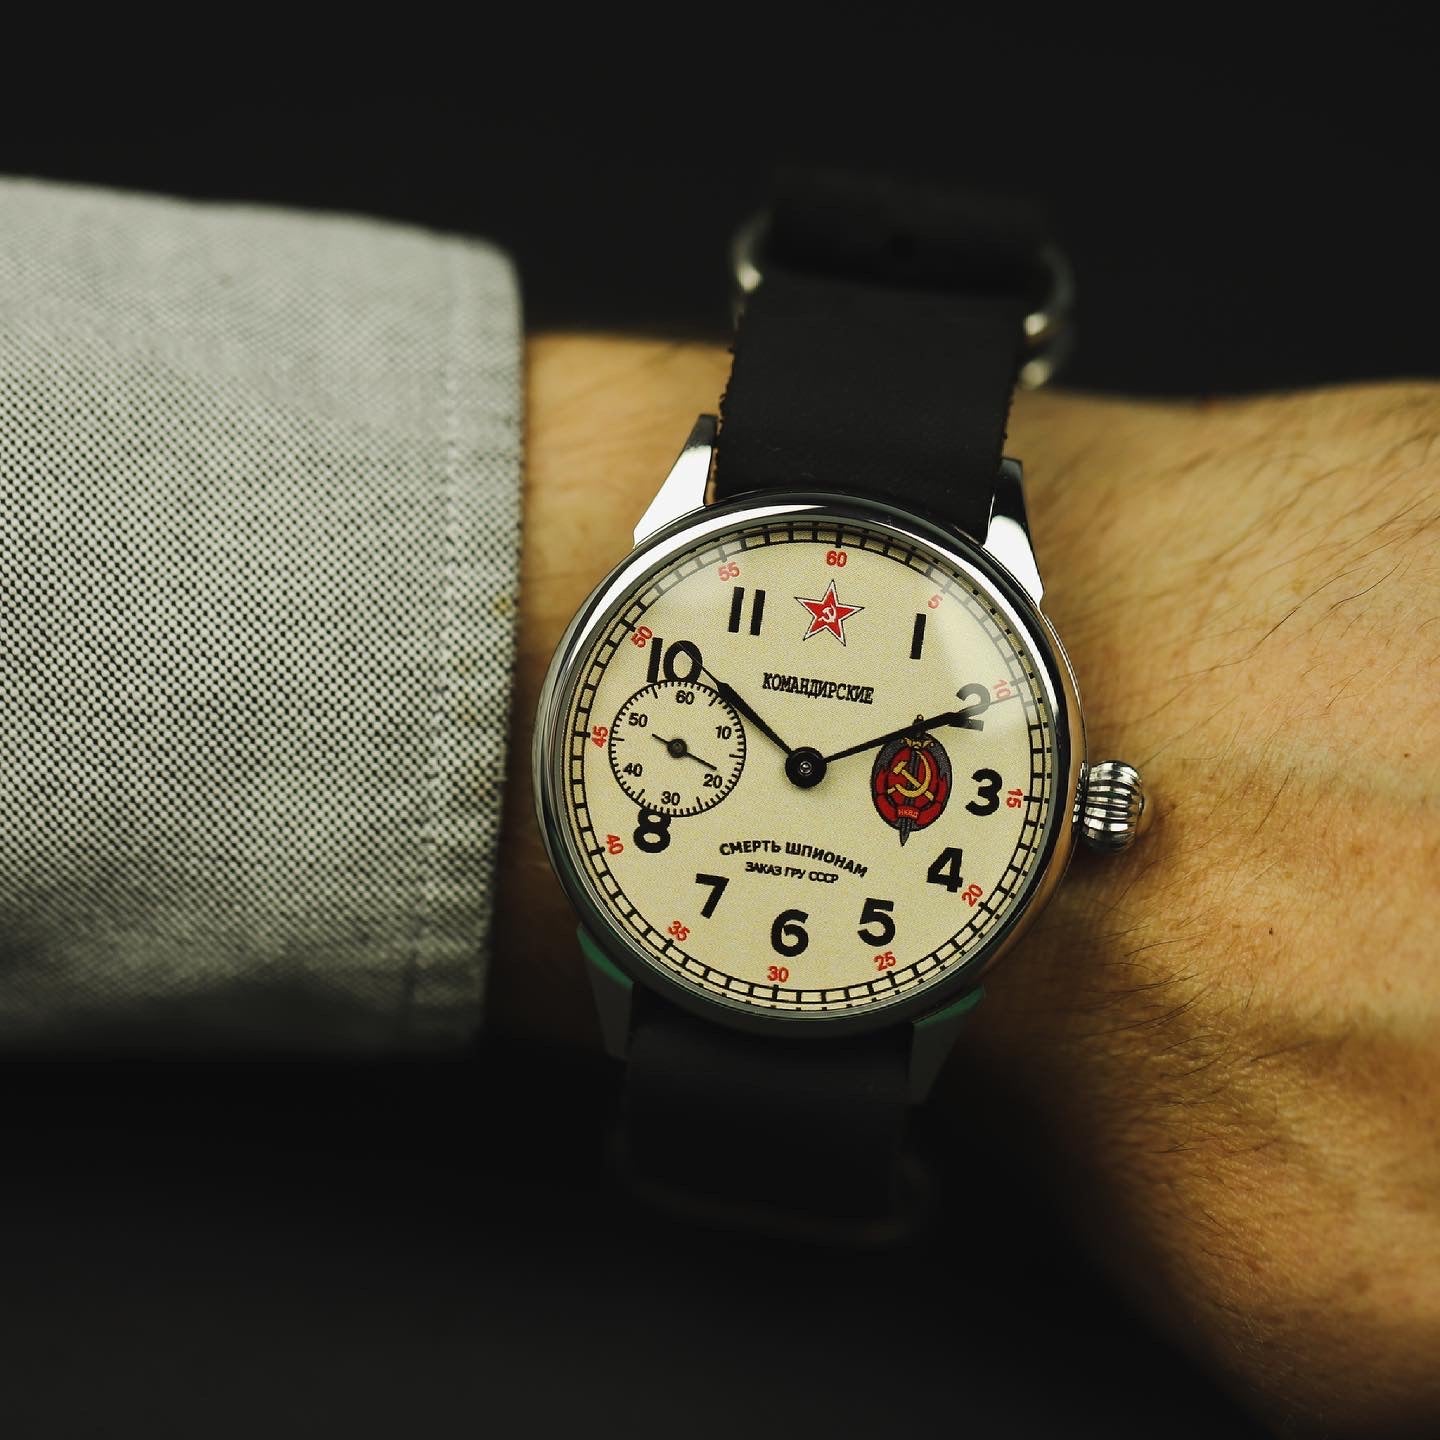 Soviet vintage watch Molnija 3602 (death to Spies)